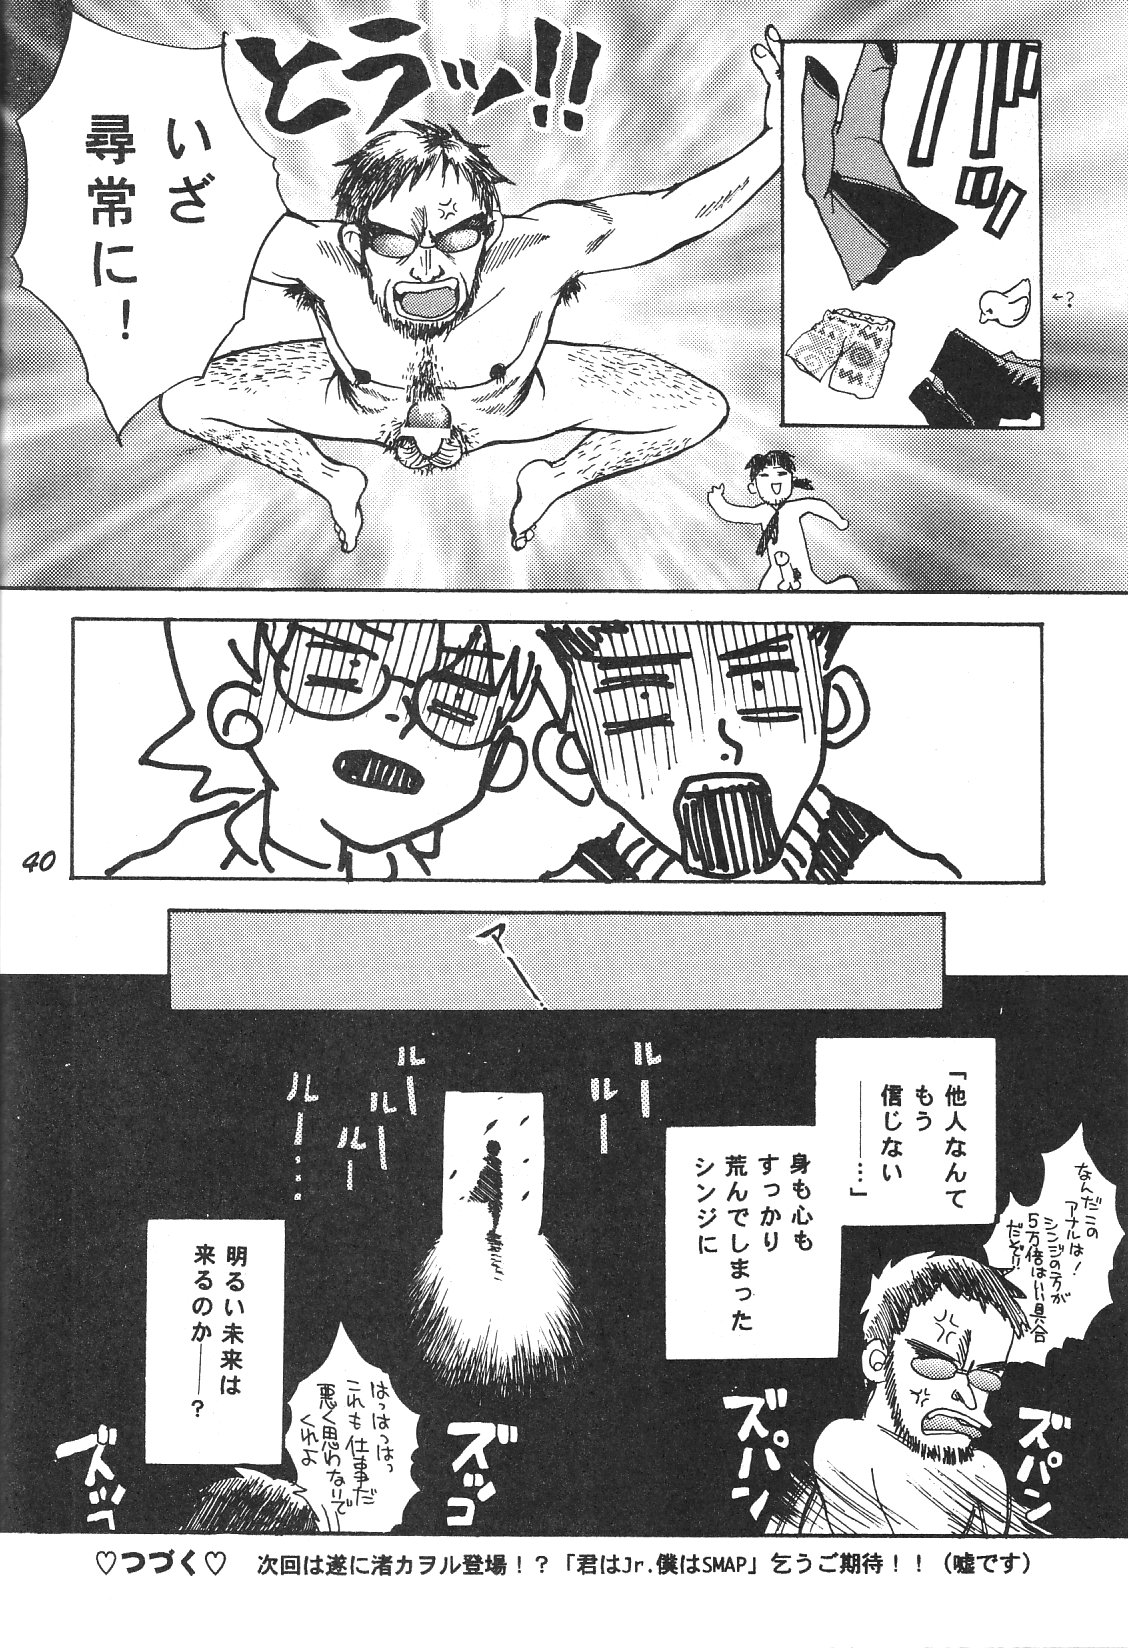 [ハニワマニア (ポン貴花田)] Maniac Juice 女シンジ再録集 '96-'99 (新世紀エヴァンゲリオン)